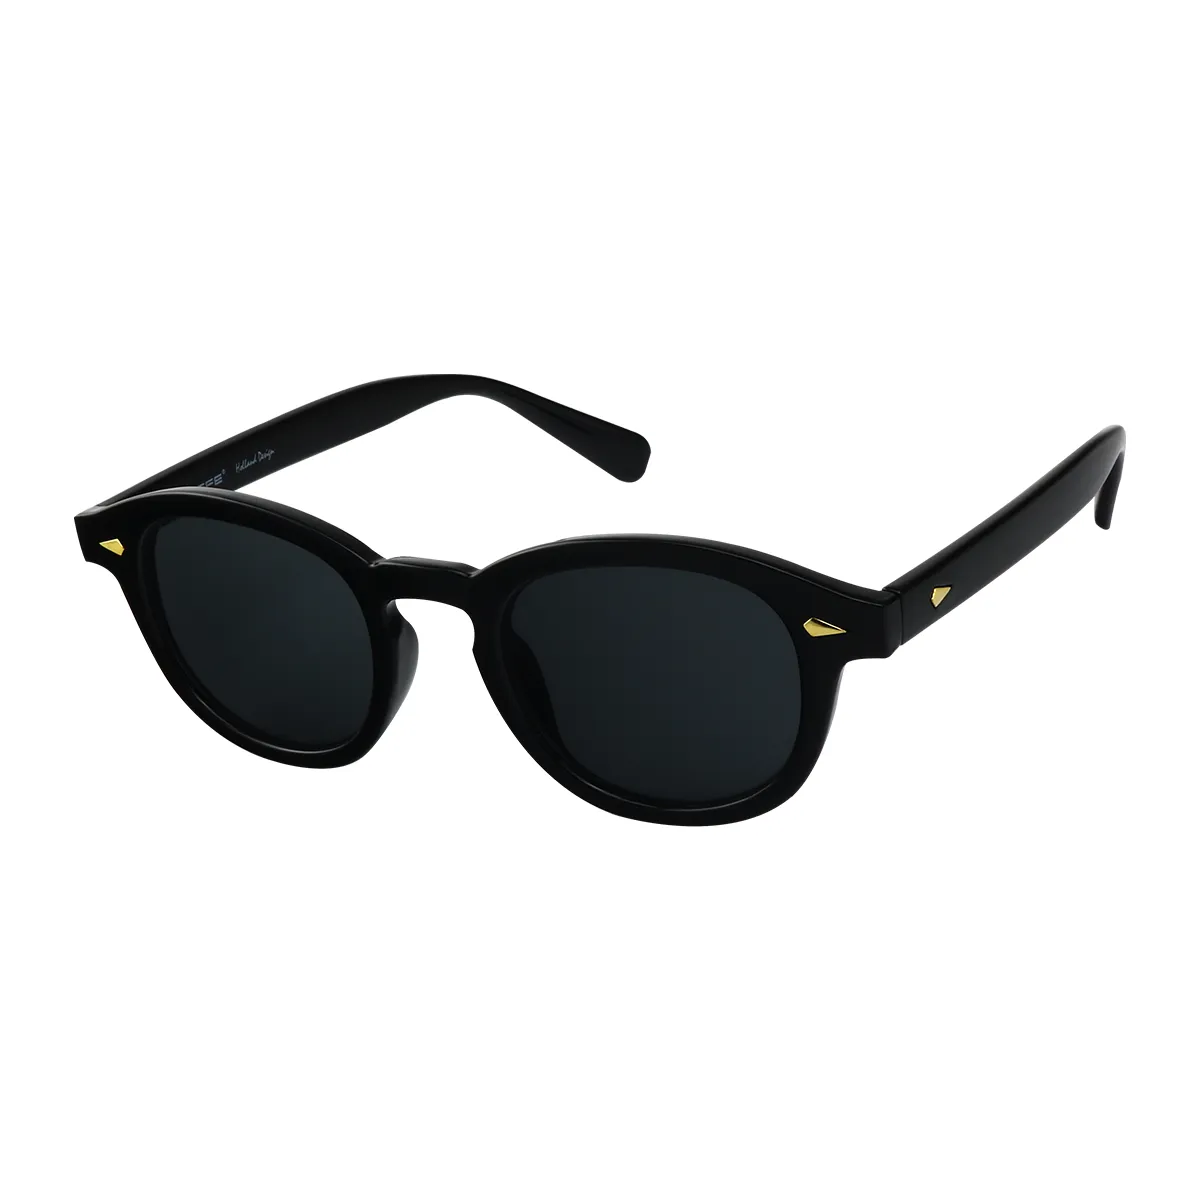 Neutral -  Black Sunglasses for Men & Women